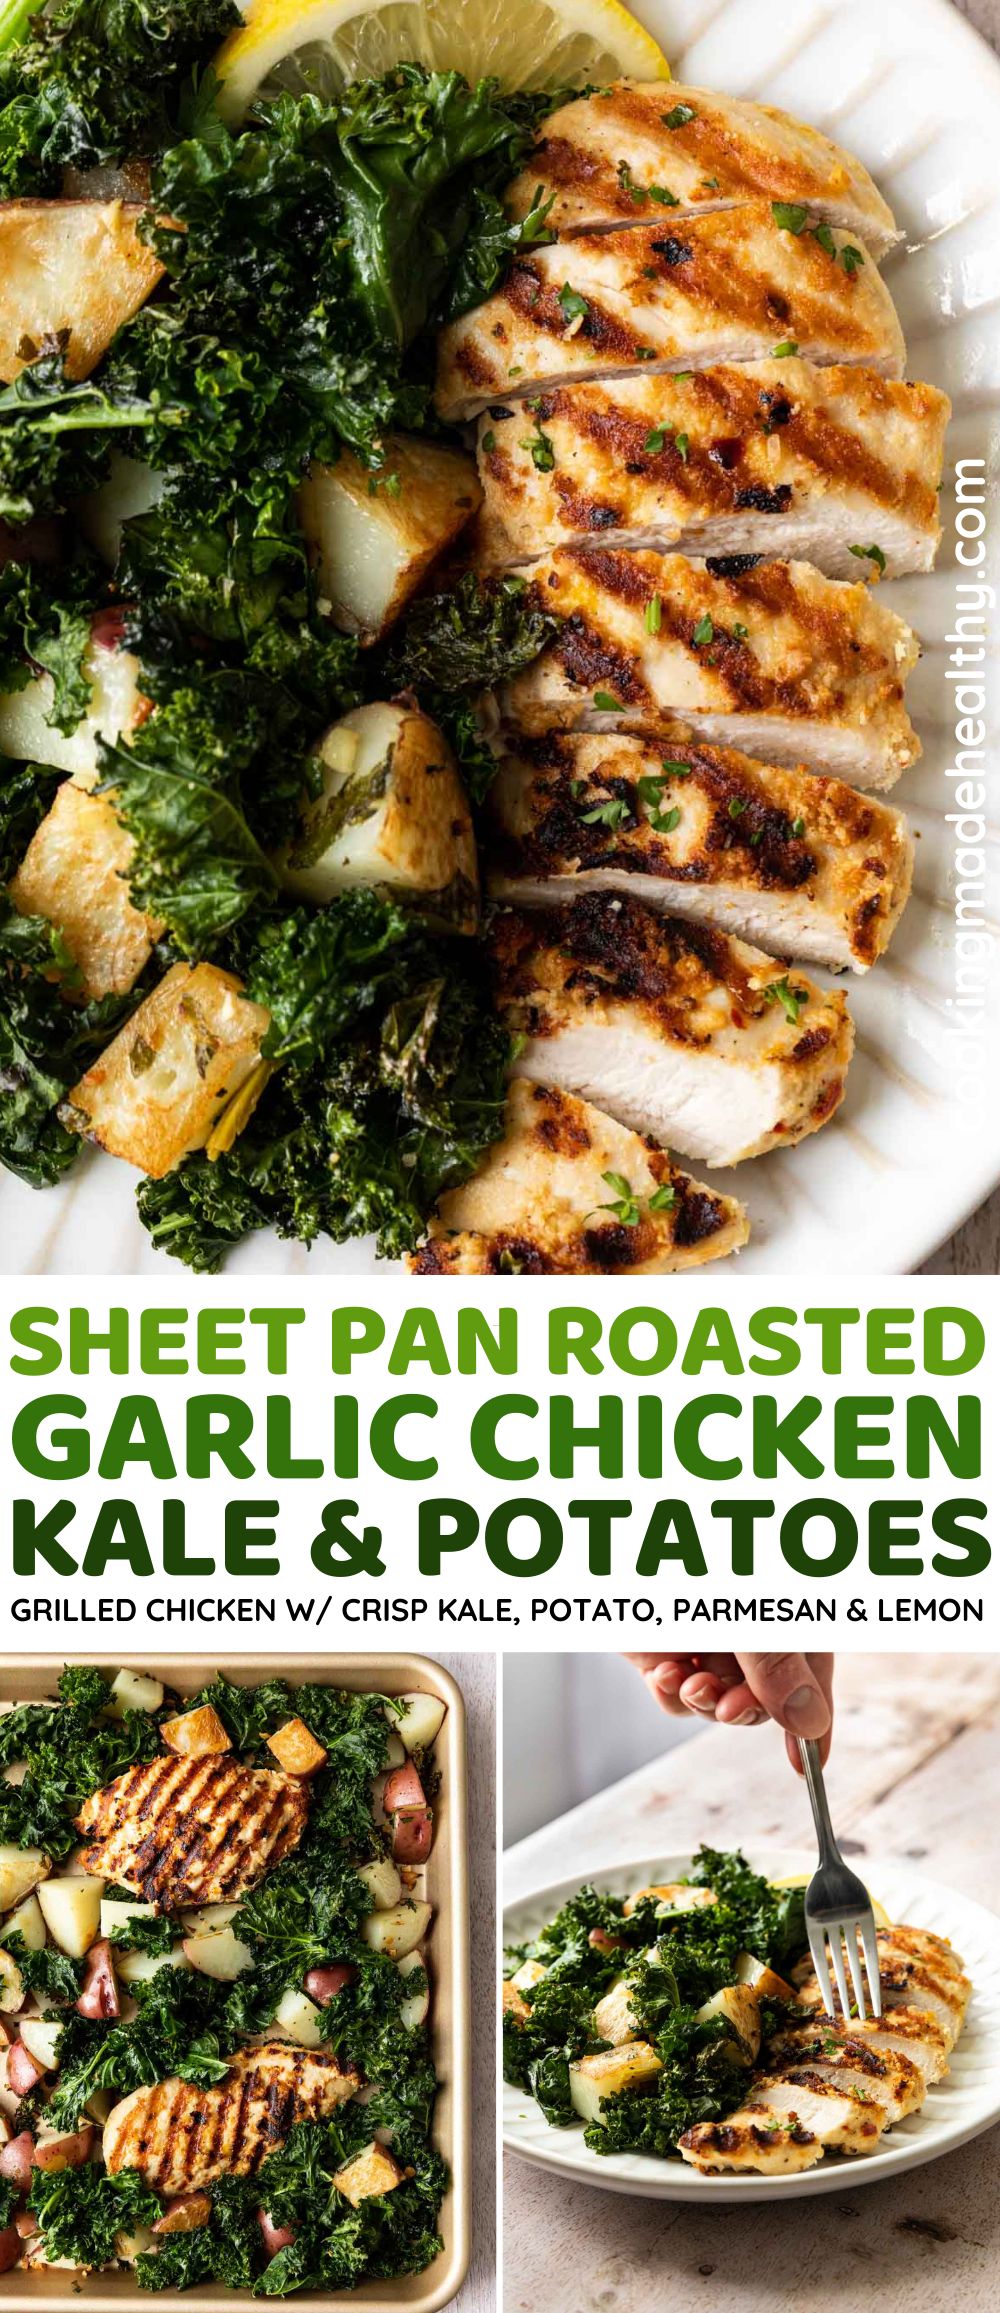 Sheet Pan Roasted Garlic Chicken, Kale and Potatoes collage